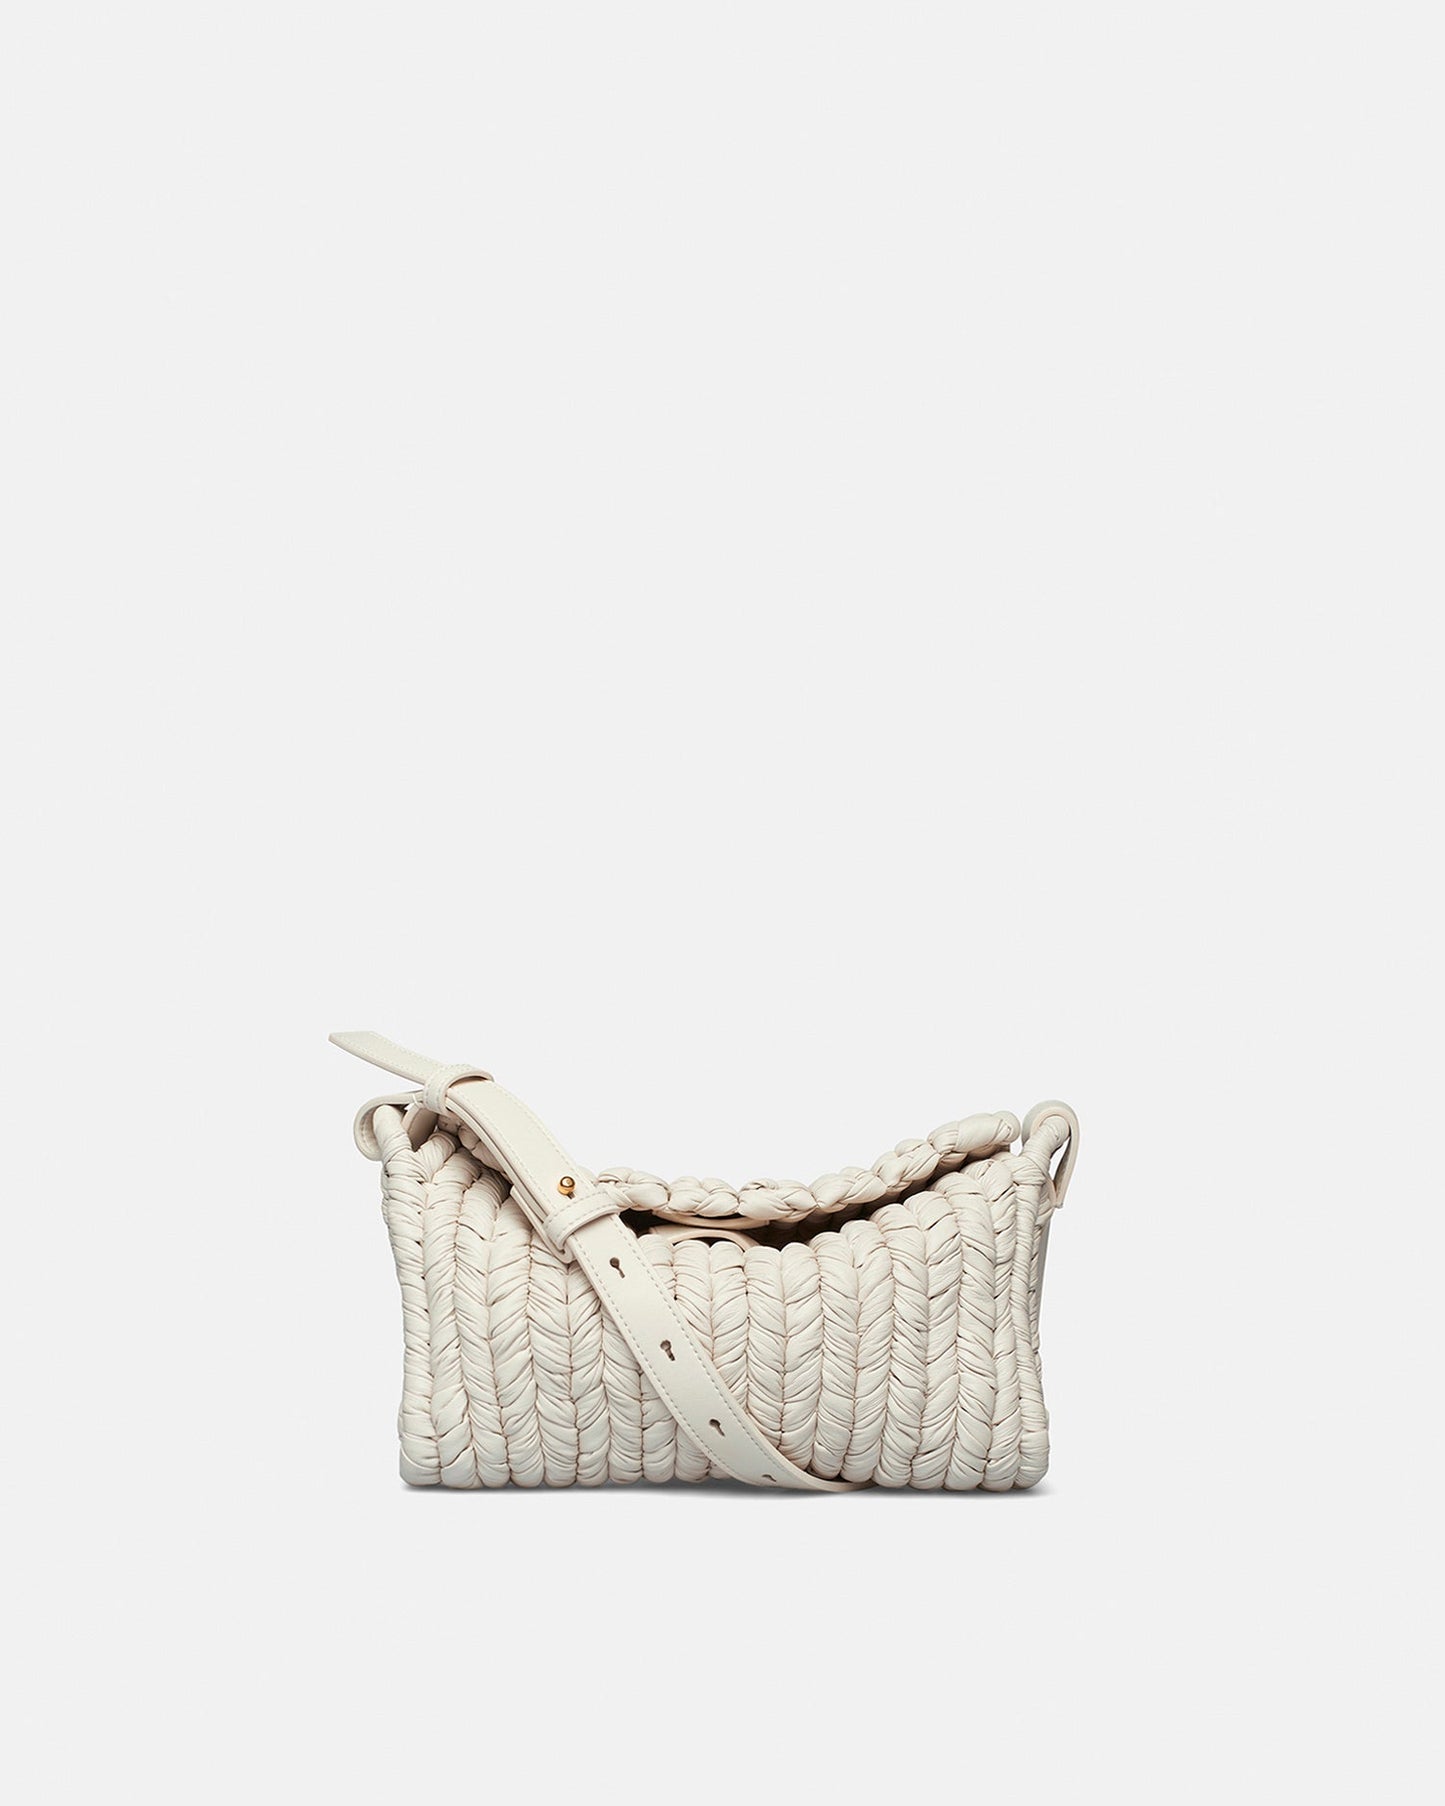 The Busket Bag - Knit Shoulder Bag - White